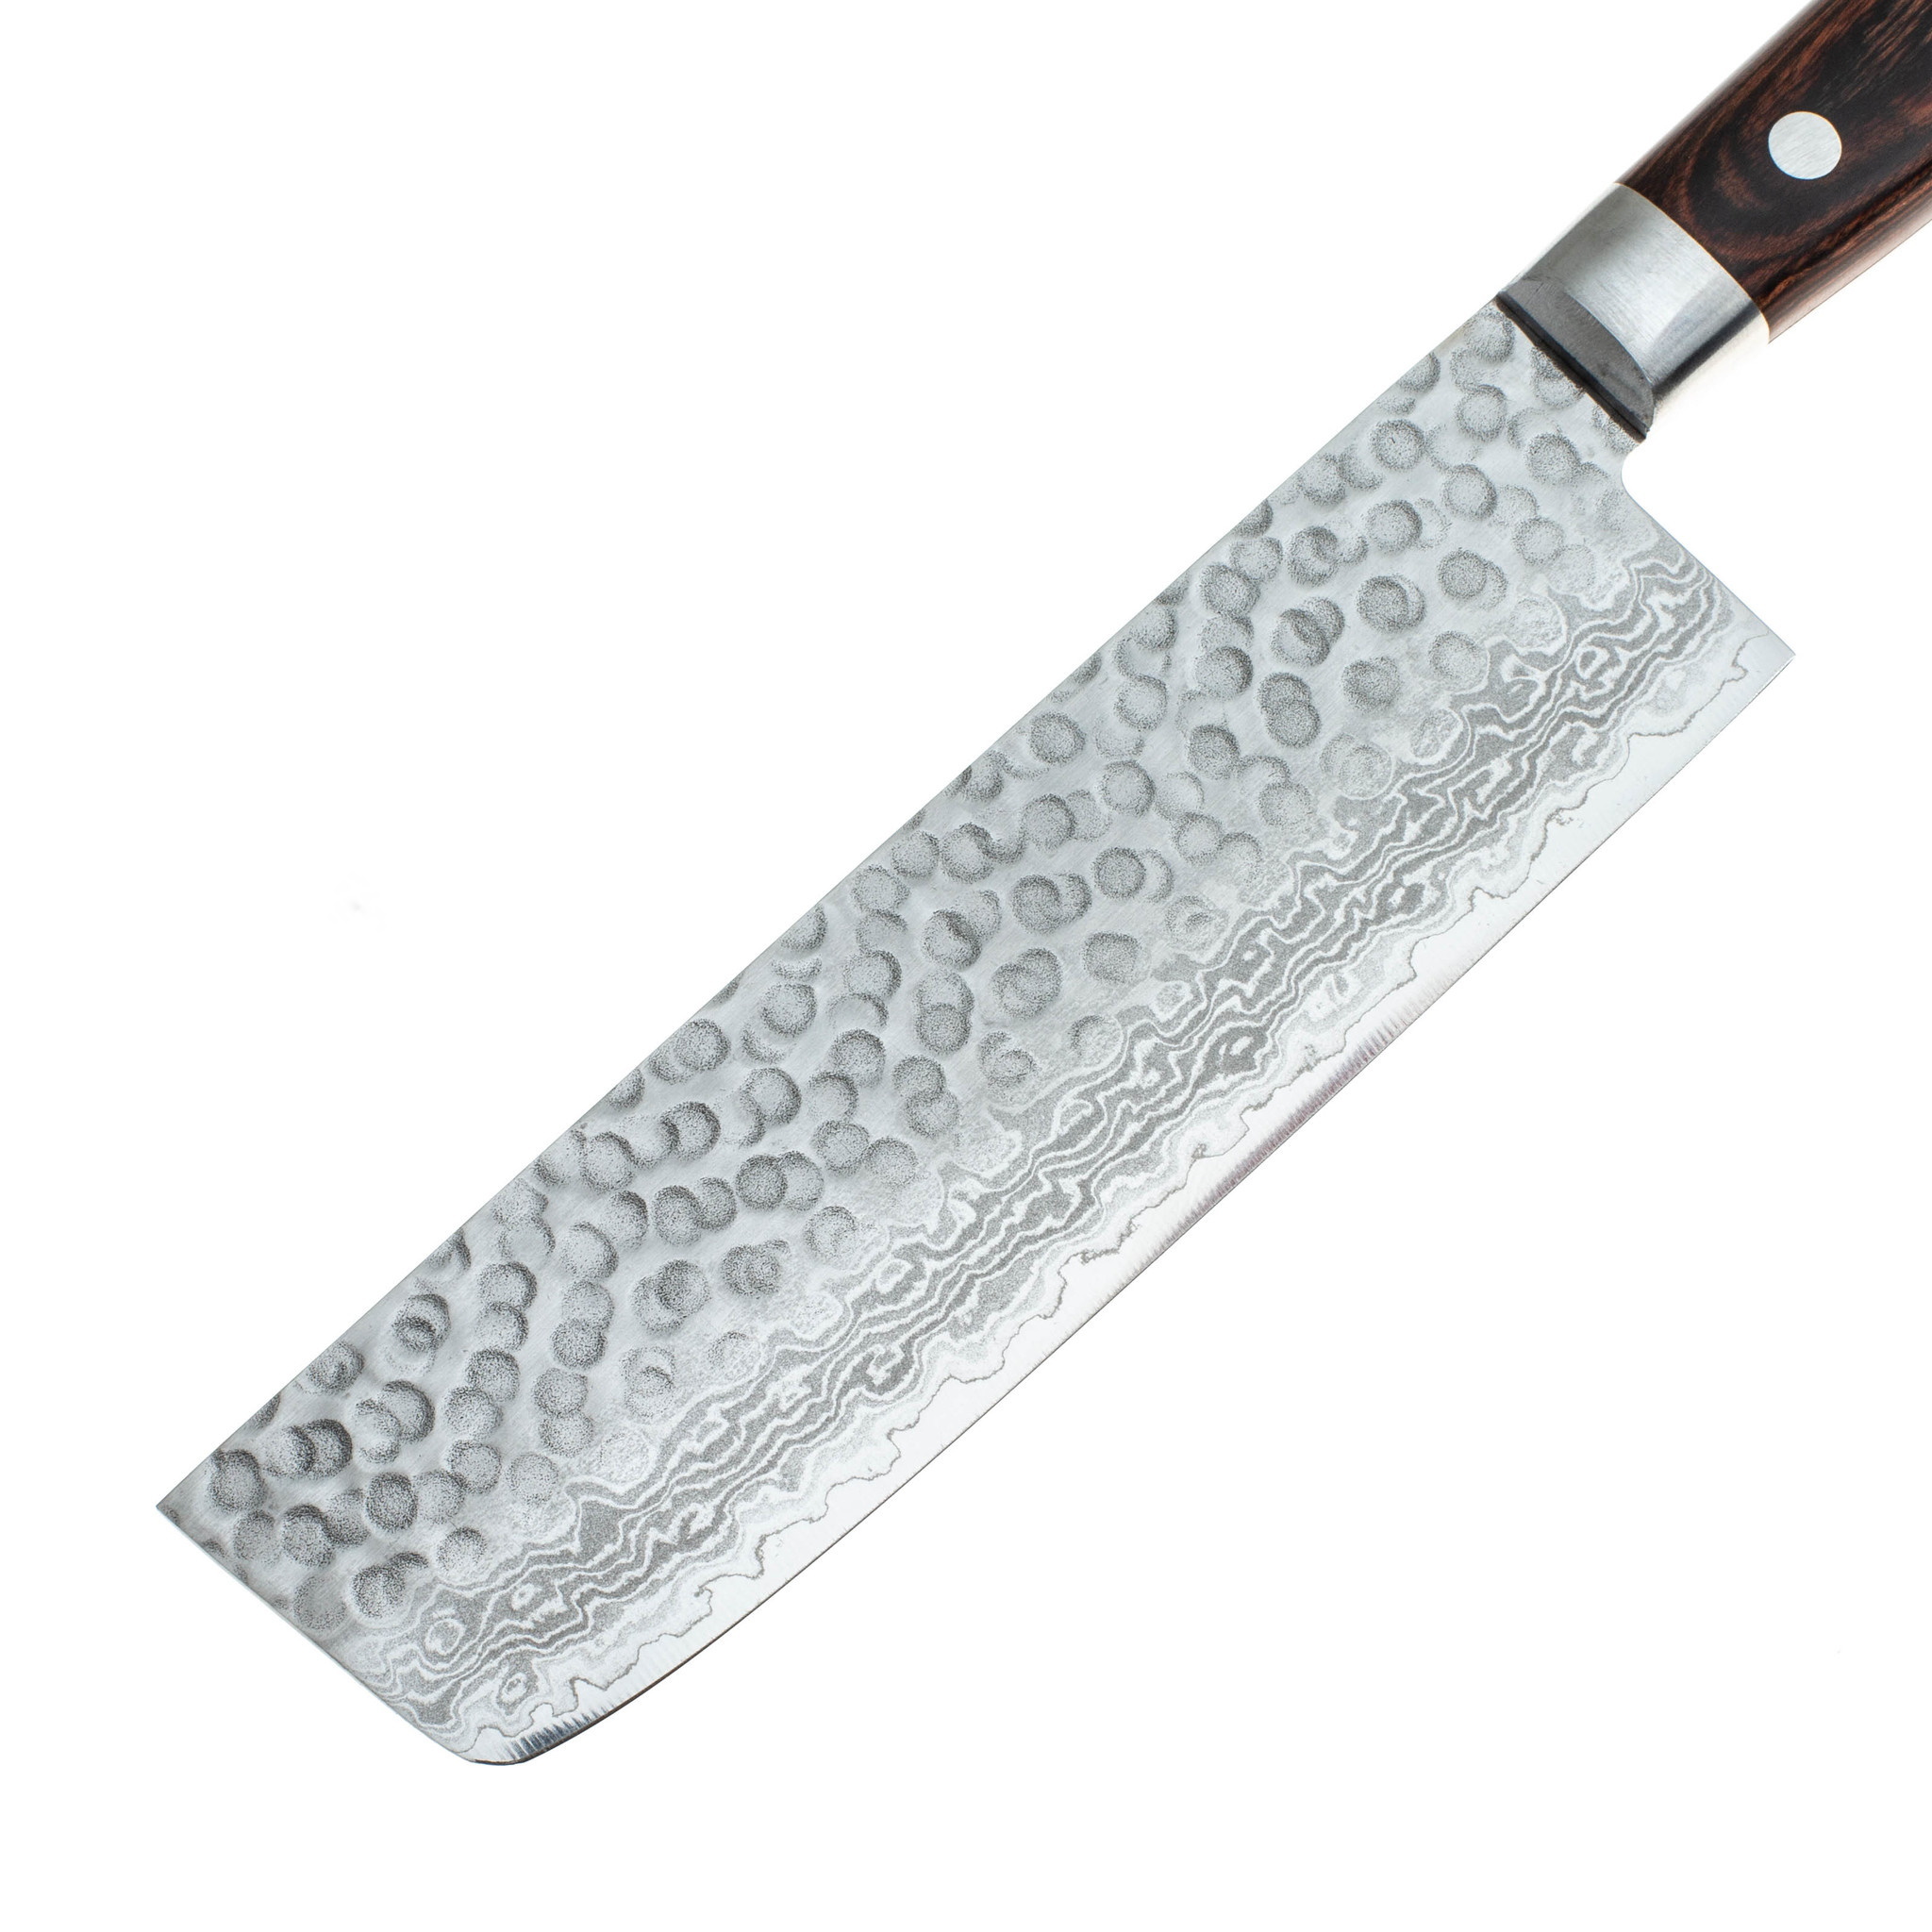 Нож Накири Sakai Takayuki 07223 160 мм, сталь VG-10, Damascus, 17 слоев, дерево - фото 2